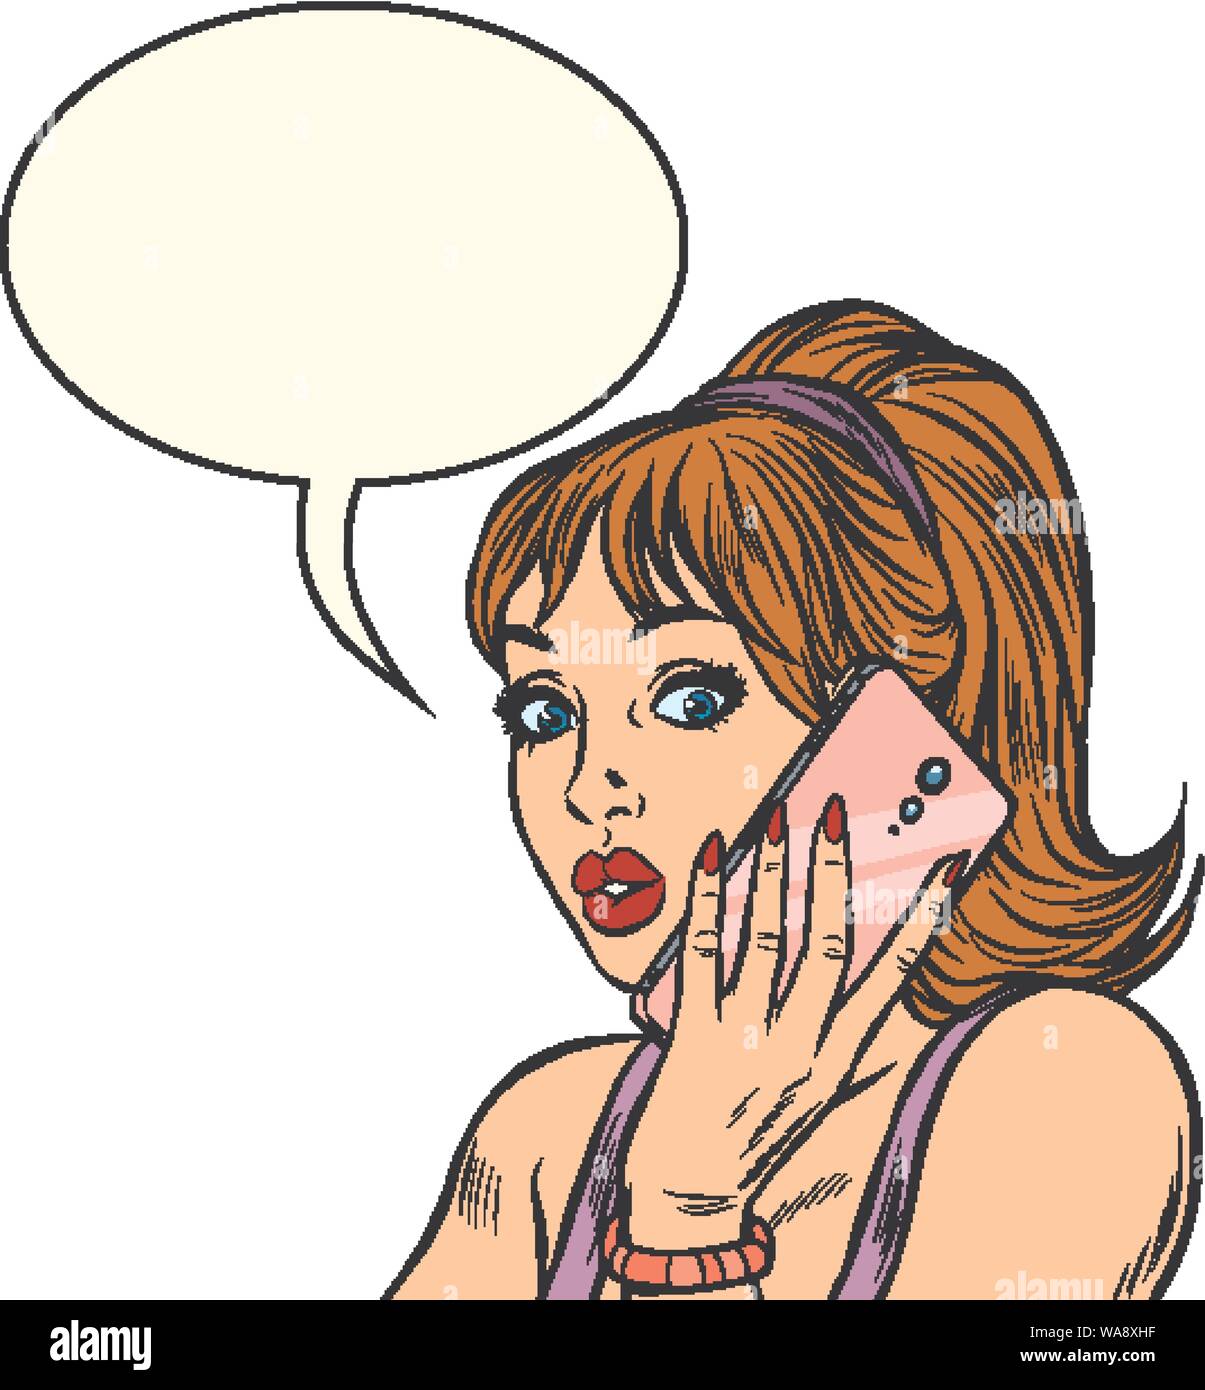 Ernsthafte Frau am Telefon zu sprechen. auf weißem Hintergrund isolieren. Pop Art retro Vektor illustration Zeichnung Stock Vektor